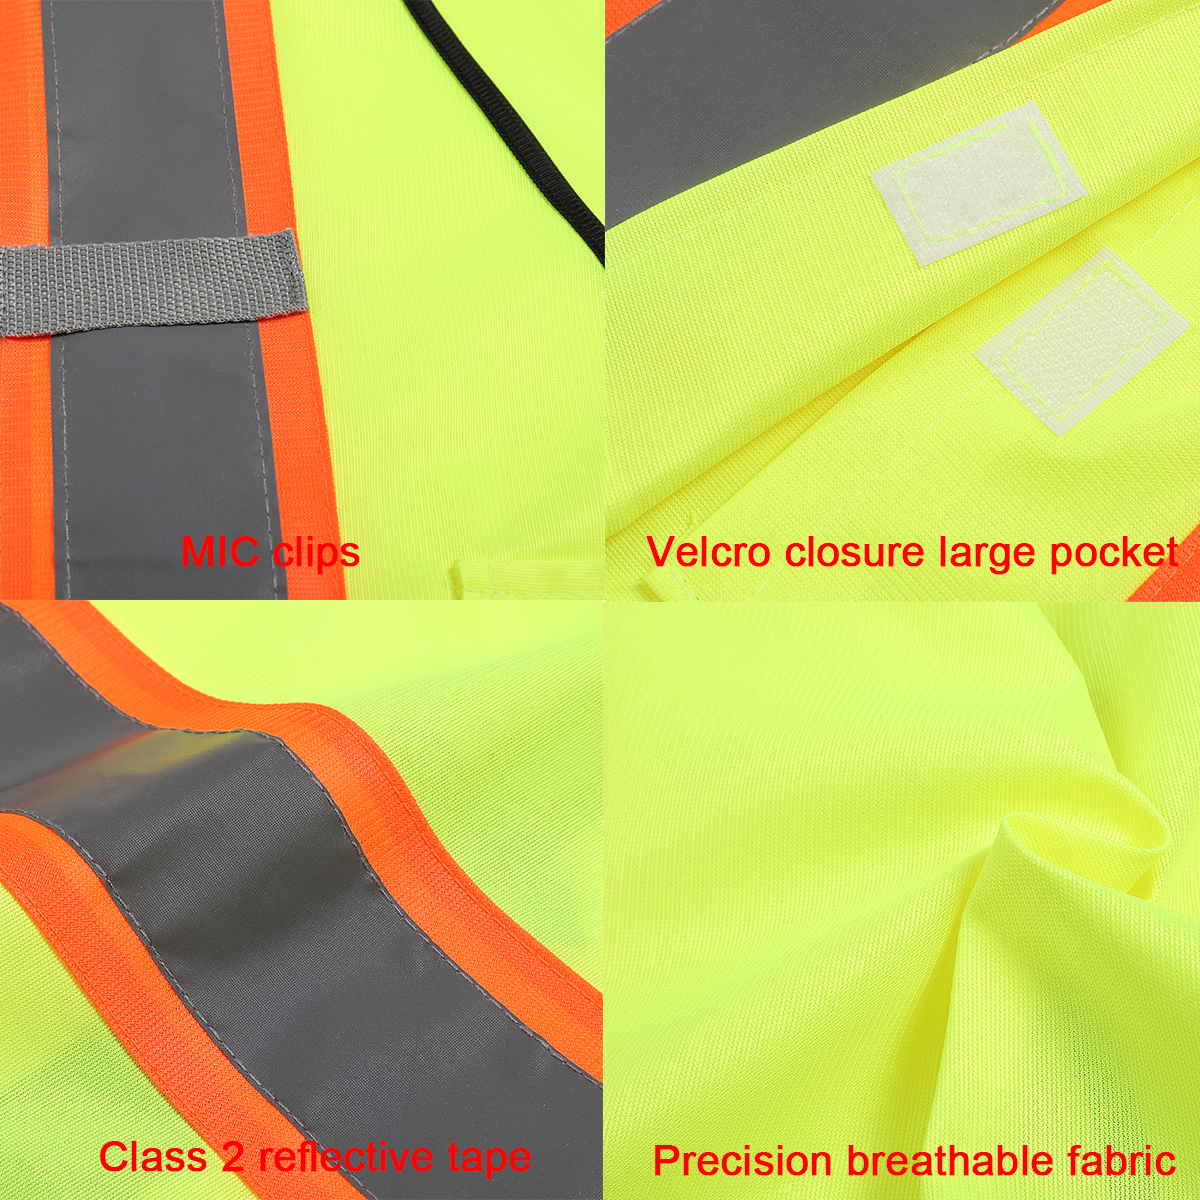 Velcro closure large pocket